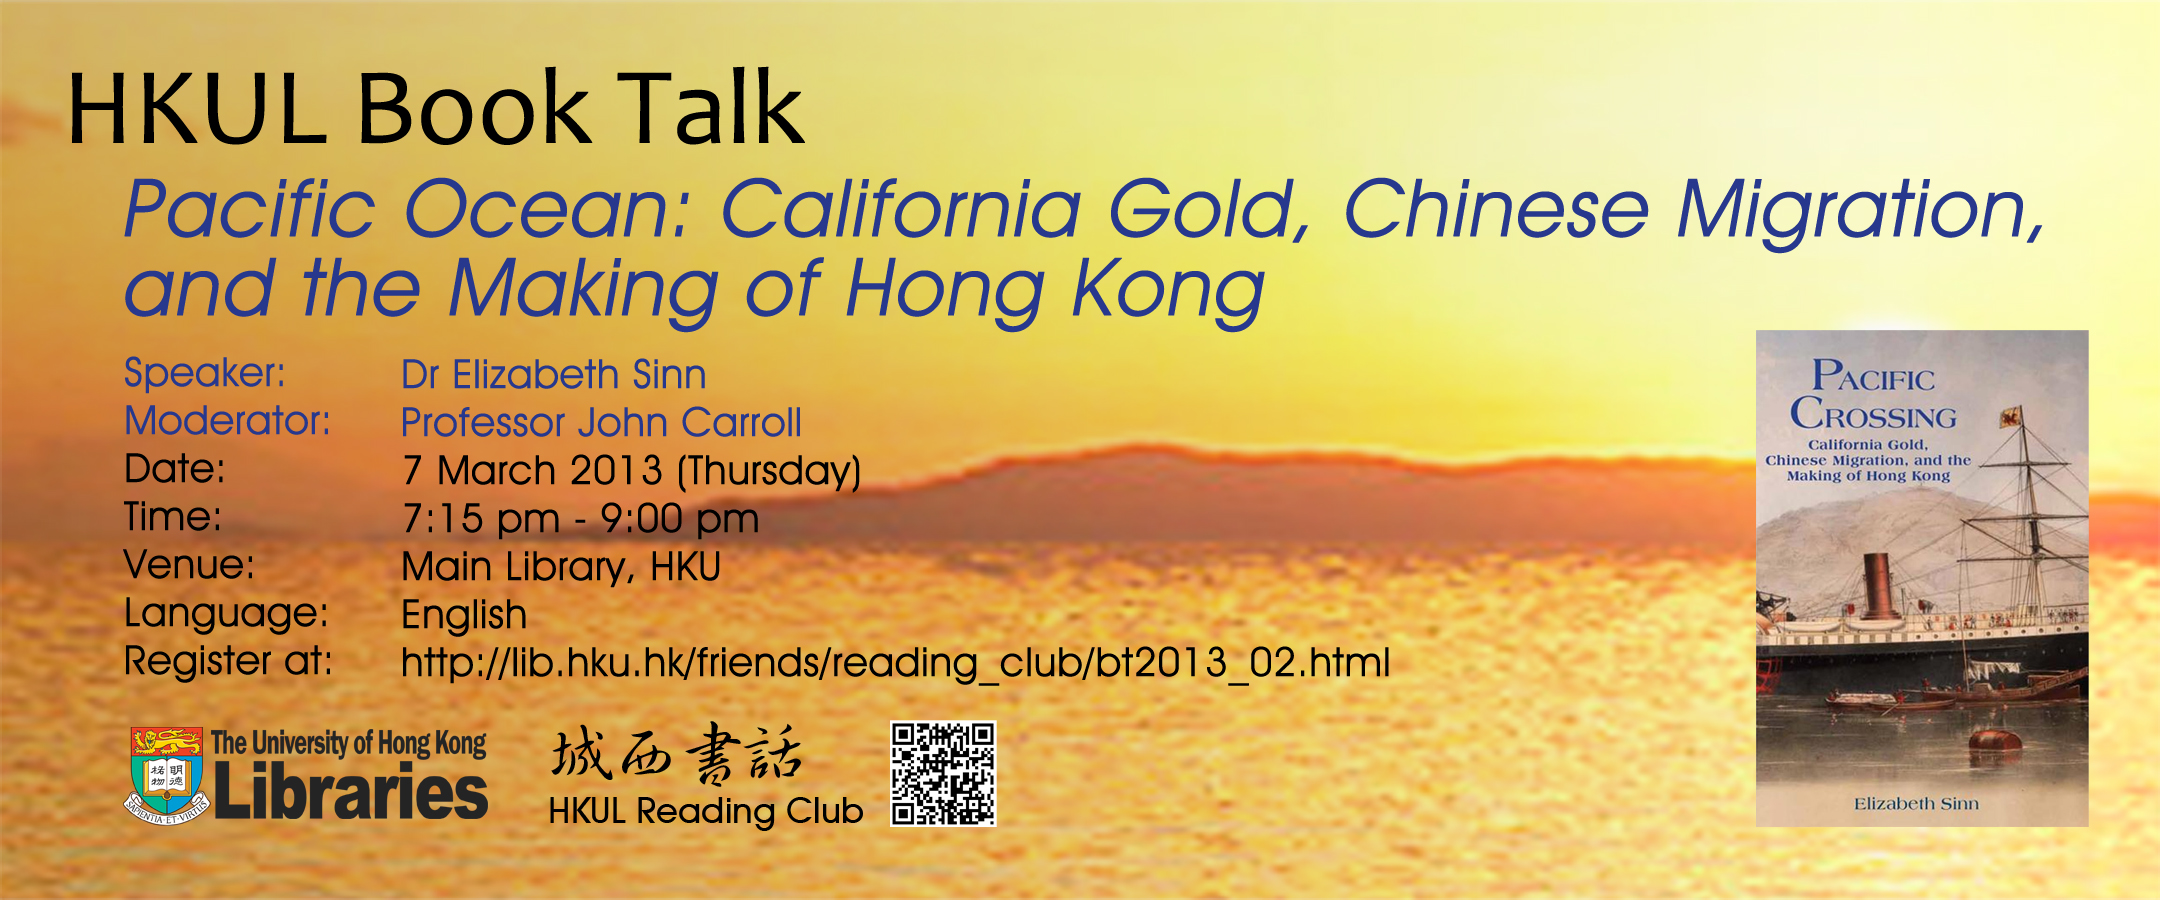 HKUL Book Talk featuring Dr Elizabeth Sinn on 7 March 2013